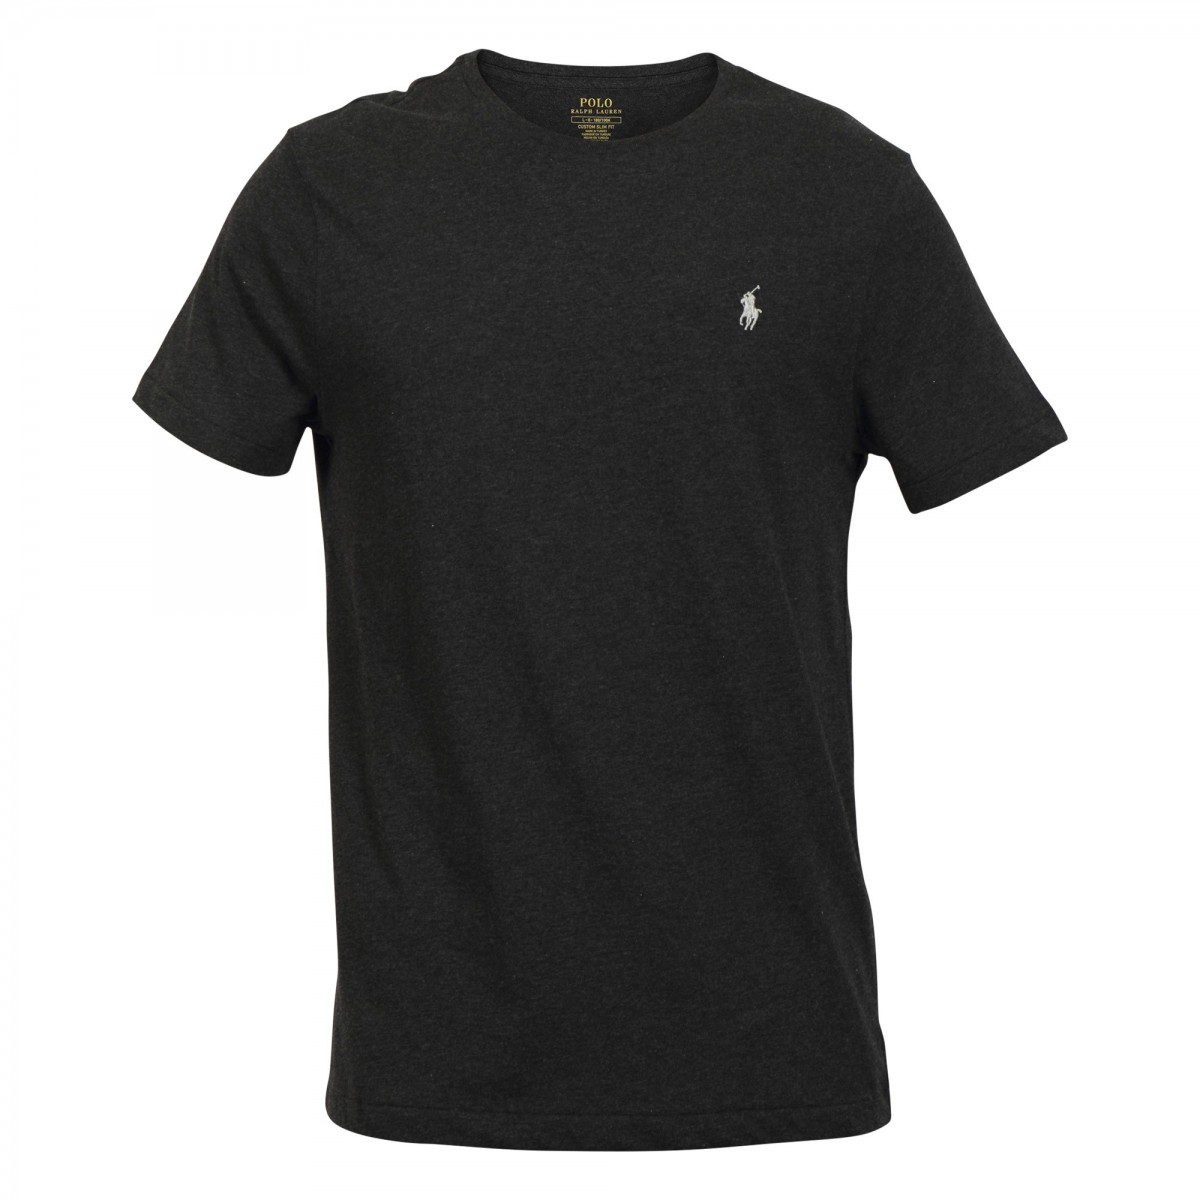 Polo Ralph Lauren Cotton Crew Neck T-shirt - Altershops Μαύρο